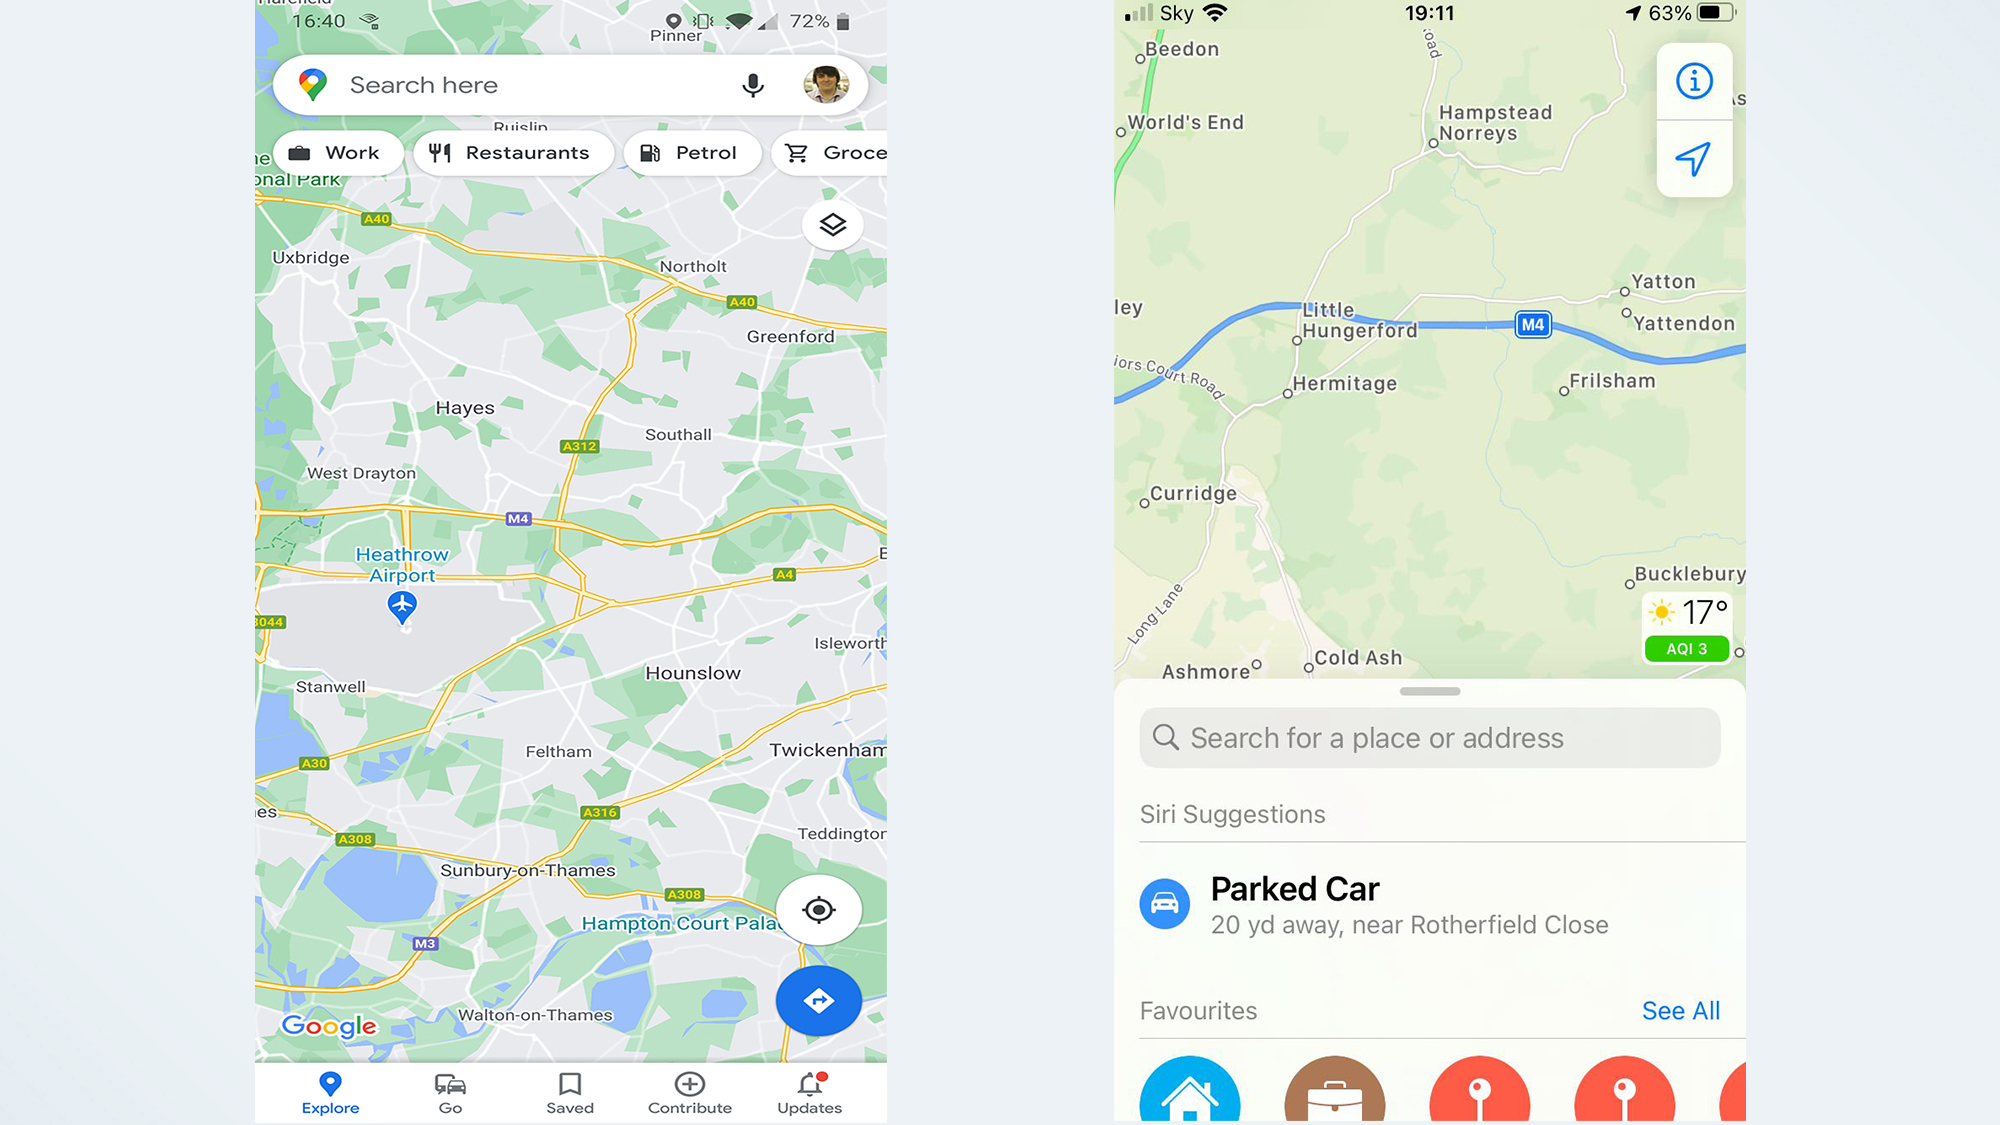 Google Maps vs. Apple Maps: Interface comparison